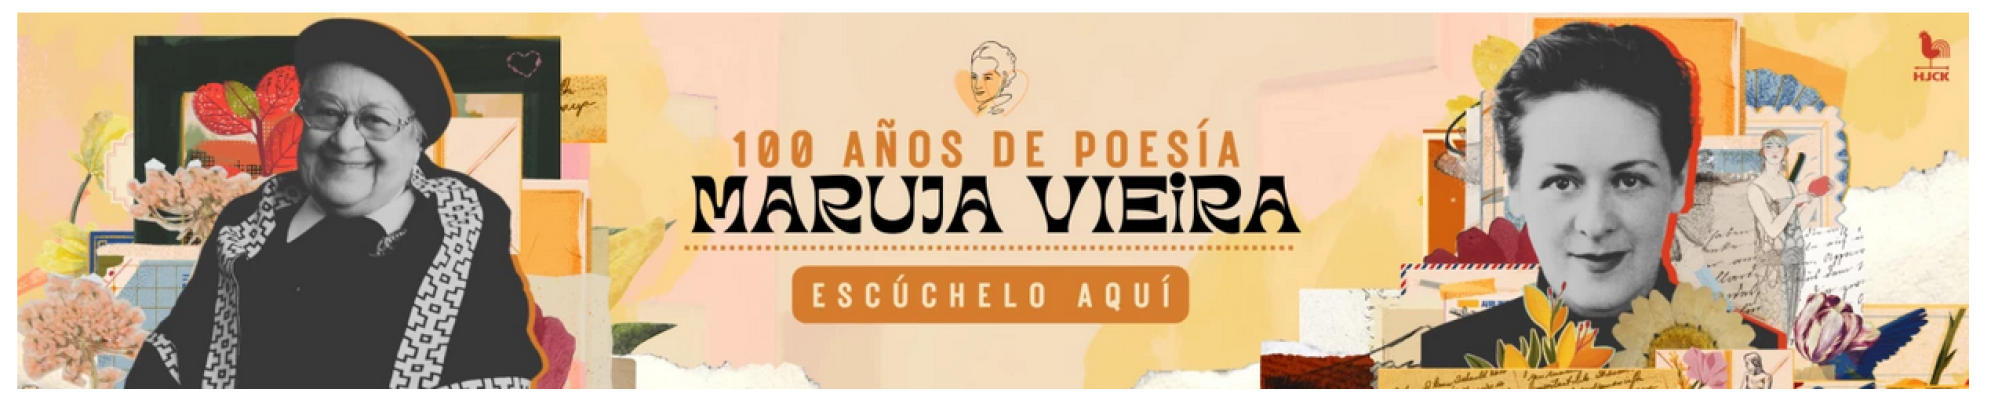 100 años de Maruja Vieira: "La poesía es la esencia del yo" - Programa 34 (2022) HJCK